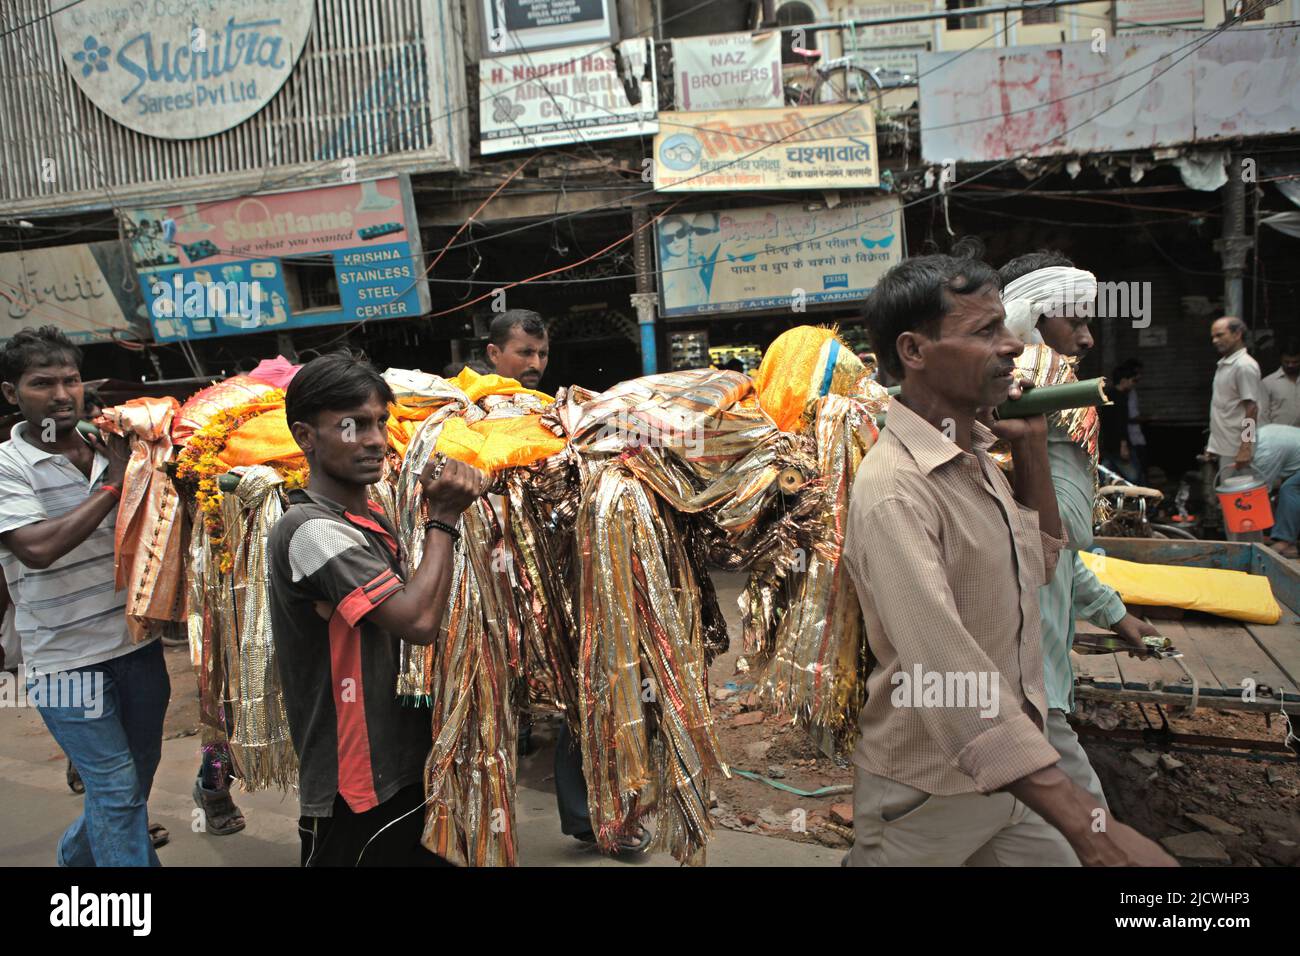 Gli uomini che trasportano un corpo mentre stanno camminando su una strada trafficata, dirigendosi verso uno dei ghat di cremazione sulla riva del fiume Ganges per la cremazione funeraria in Varanasi, Utar Pradesh, India. Foto Stock